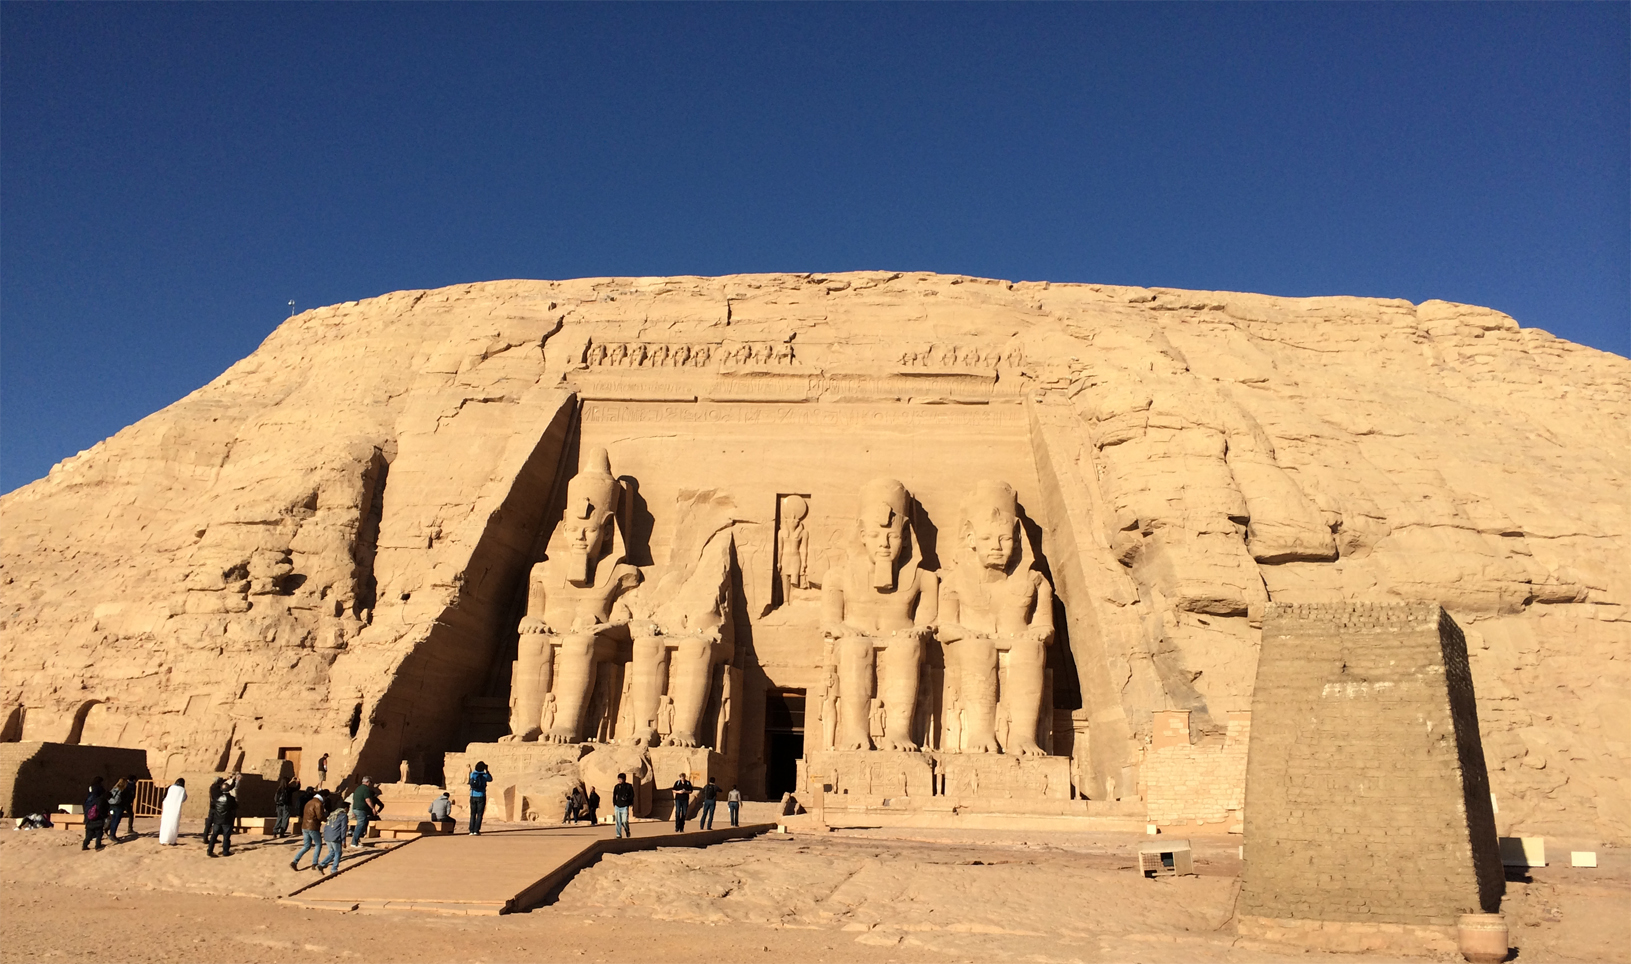 
Ramses II temple in Abu Simbel